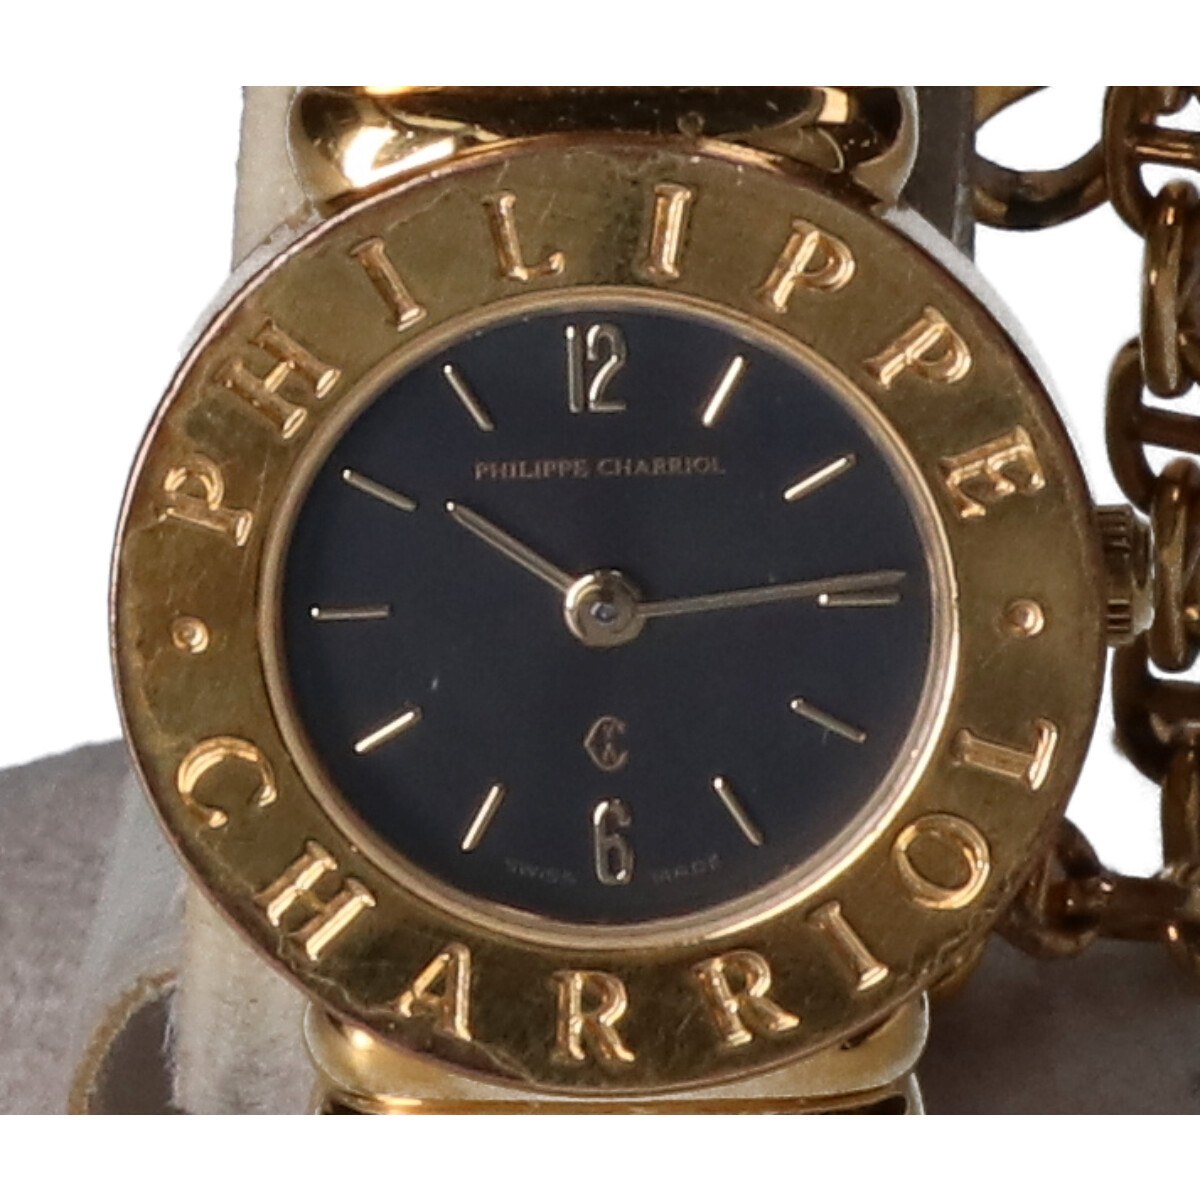 シャリオールの7007901 サントロペ 黒文字盤 クォーツ 腕時計の買取実績です。